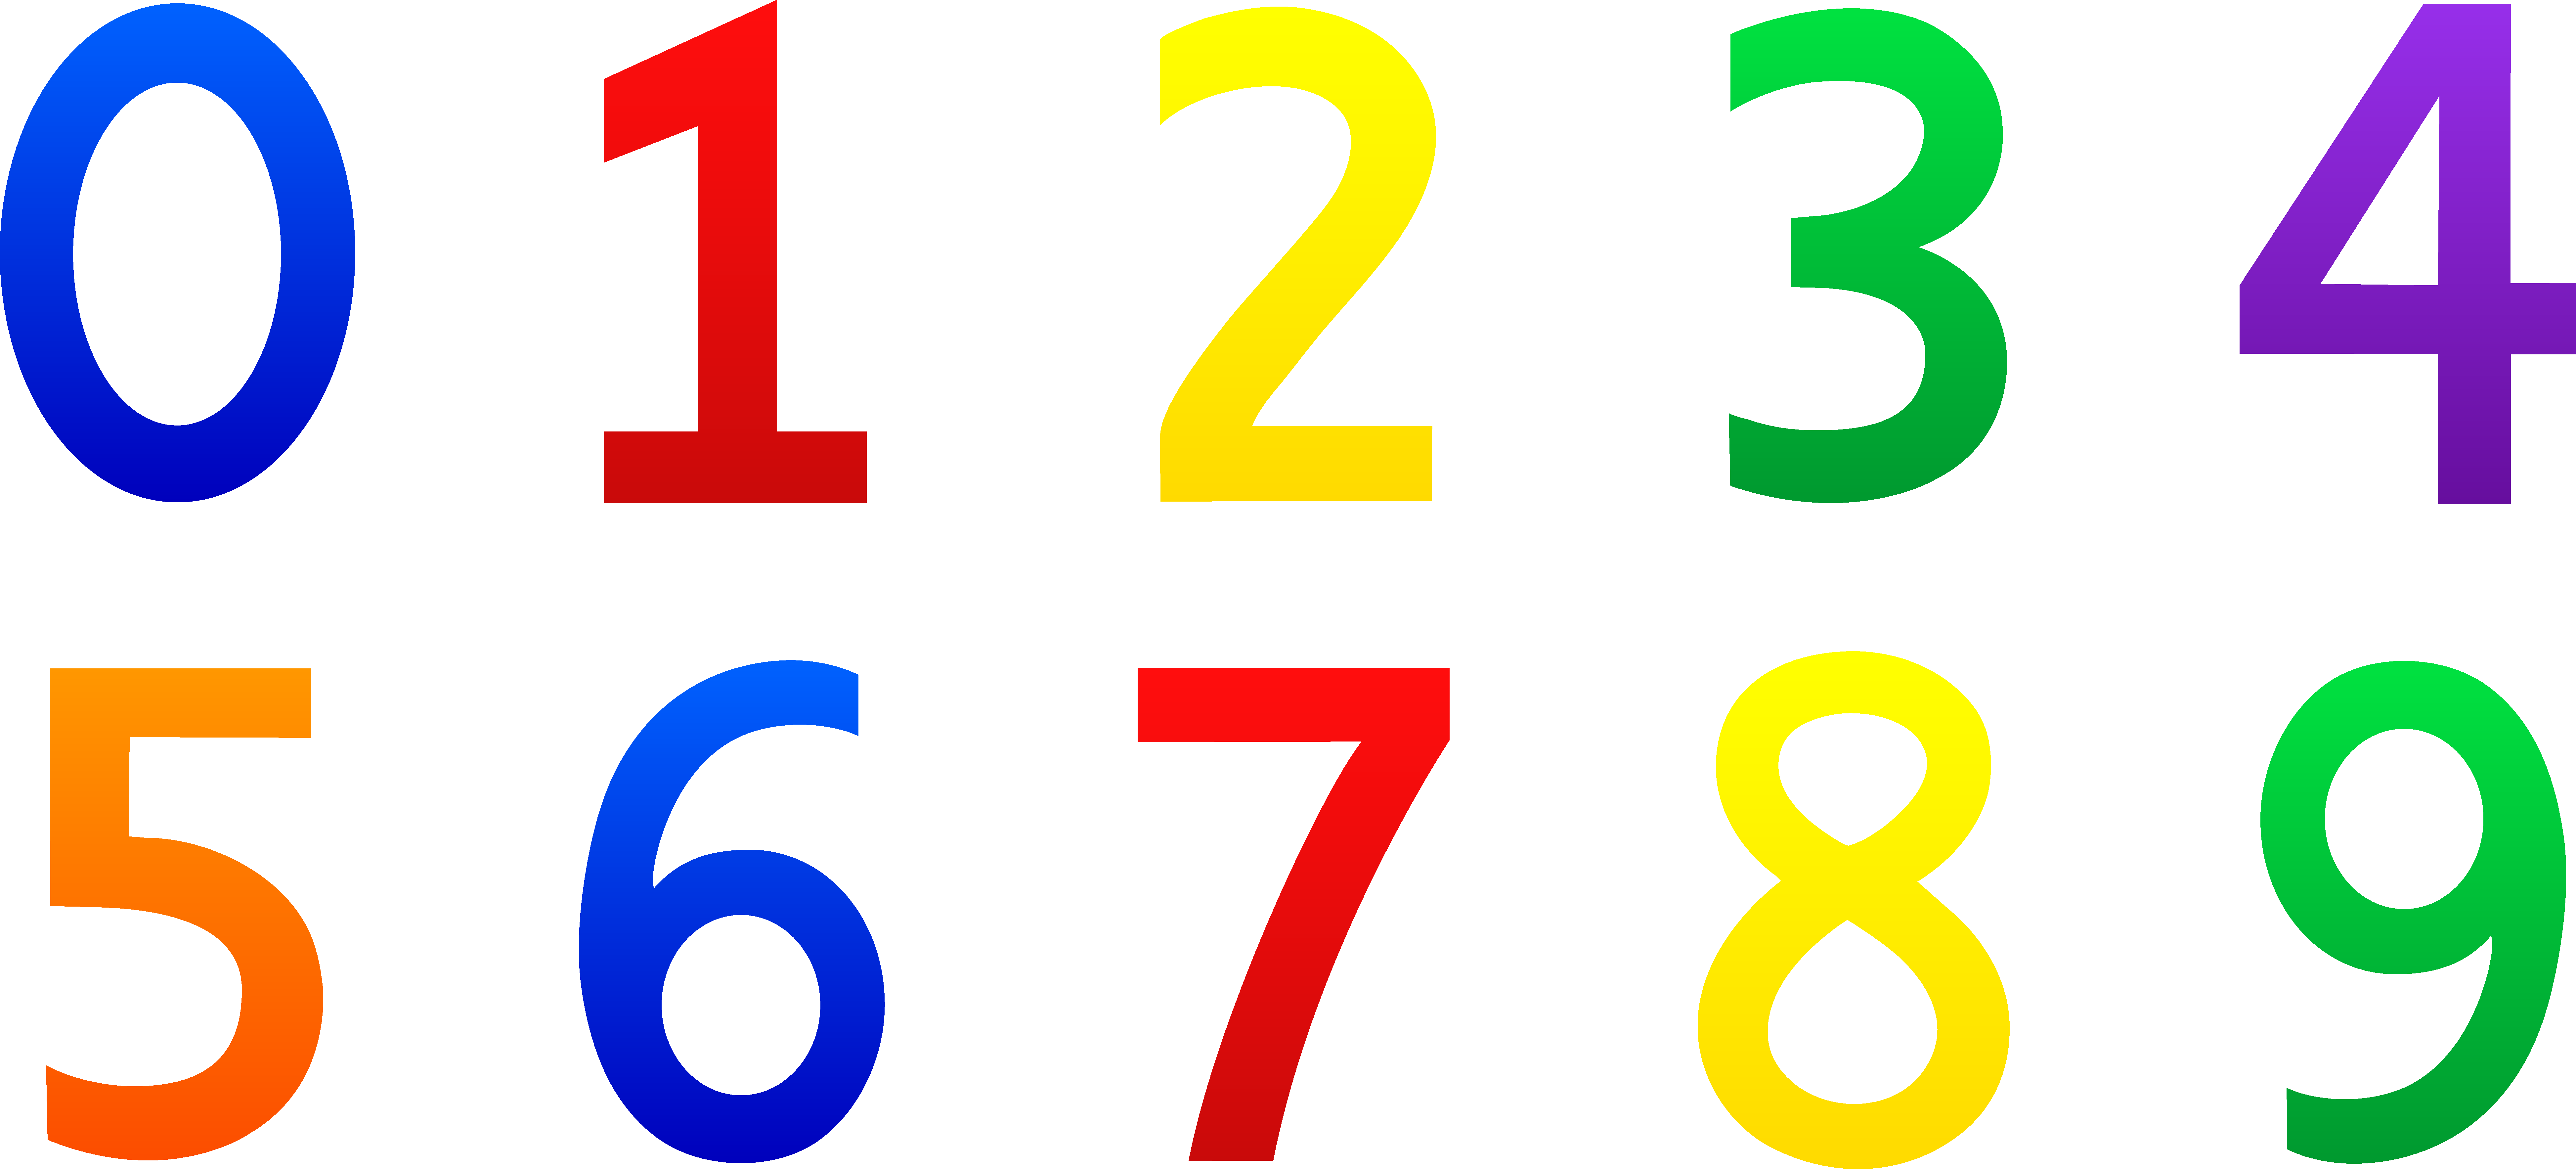 اعداد رنگارنگ و png برای کارهای گرافیکی